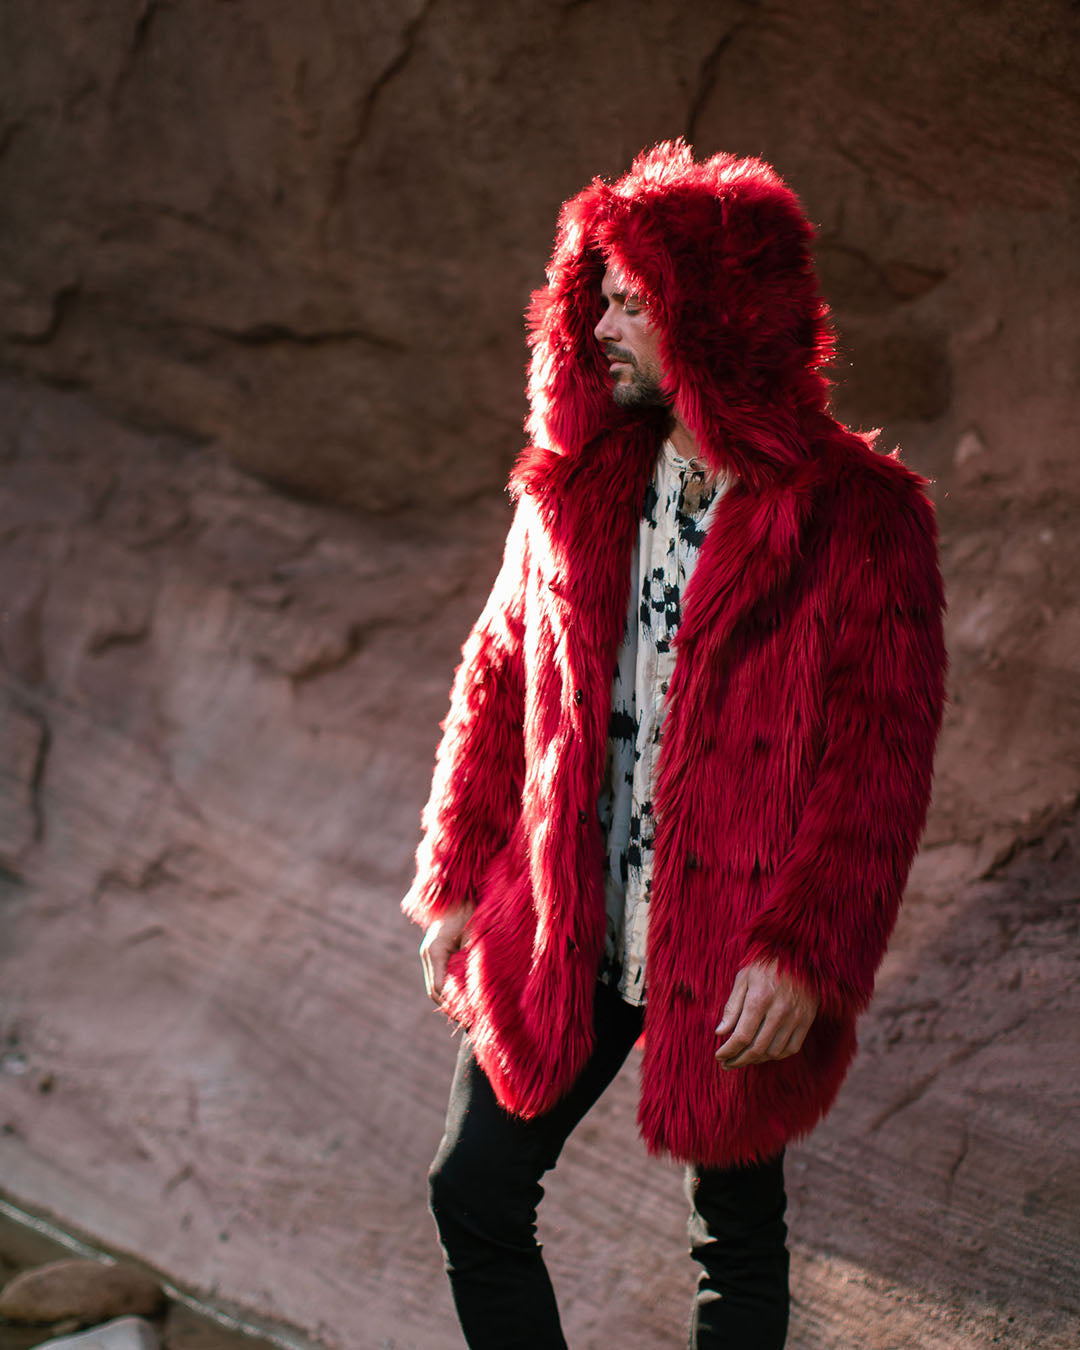 9 Best Faux fur hoodie ideas  faux fur hoodie, fur hoodie, faux fur